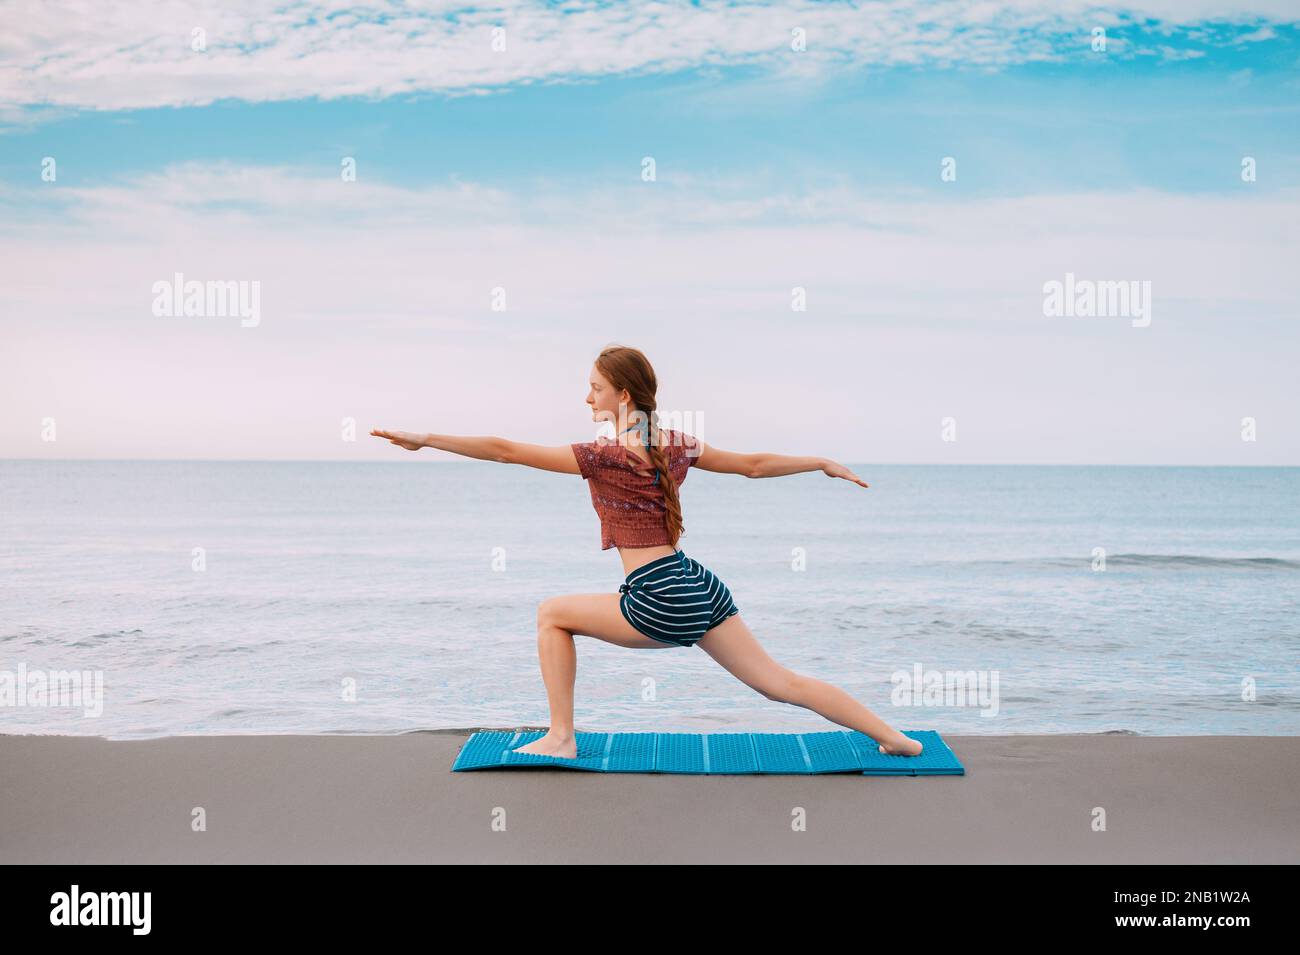 Active Sport Rothaarige, die am Strand Yoga macht in Montenegro Side View, Female ist in Sportkleidung am Strand der Adria Stockfoto